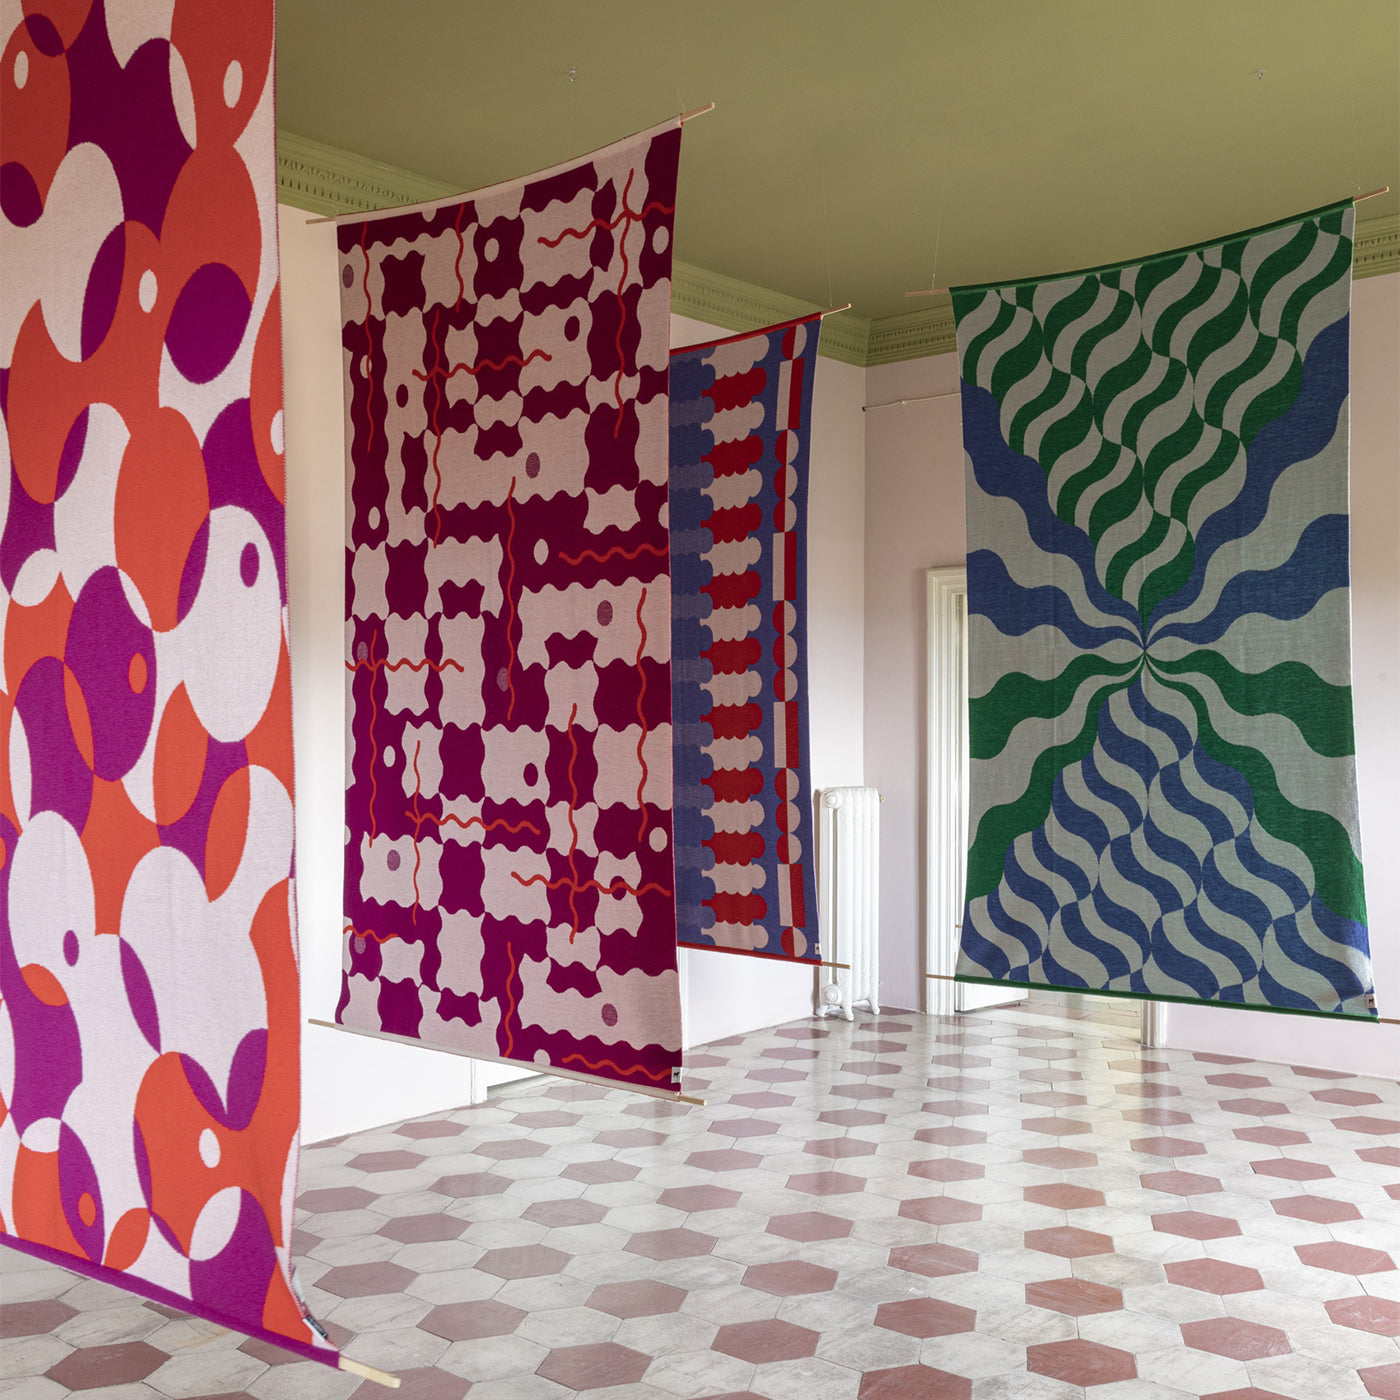 Trip 6 Polychrome Tapestry/Blanket by Serena Confalonieri - Alternative view 1